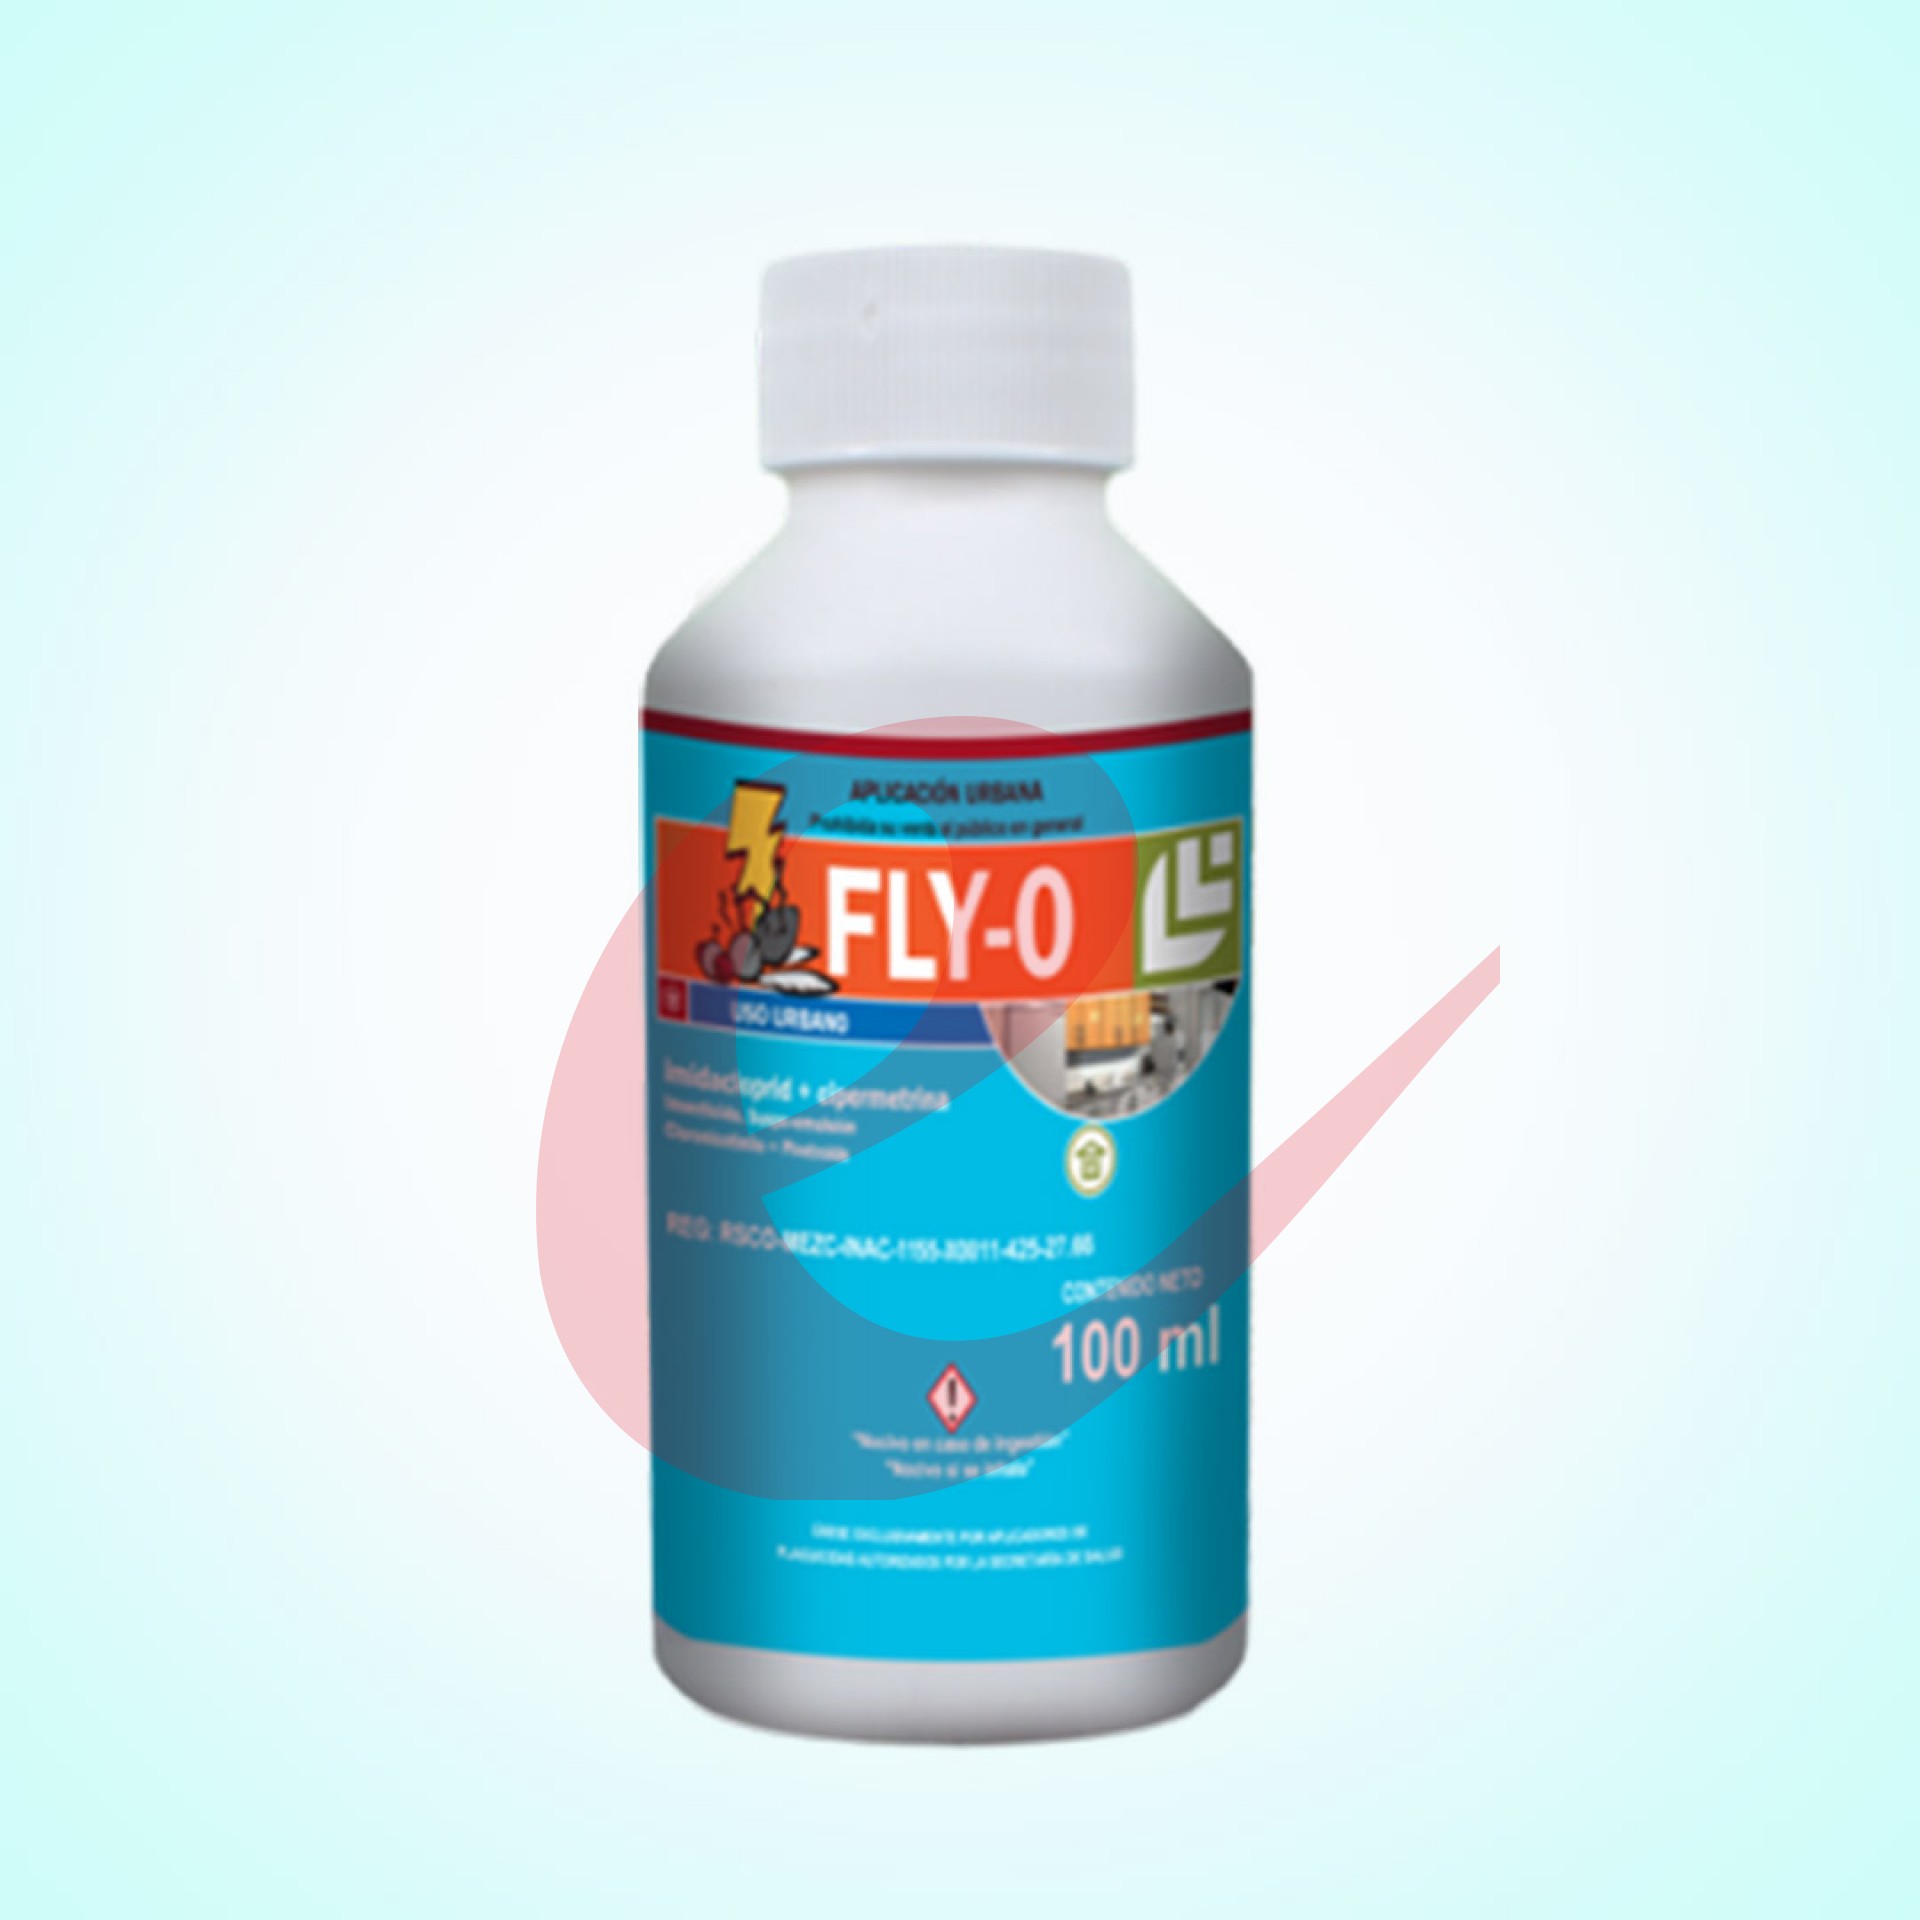 Fly-O de 100 ml    (Cipermetrina + Imidacloprid)